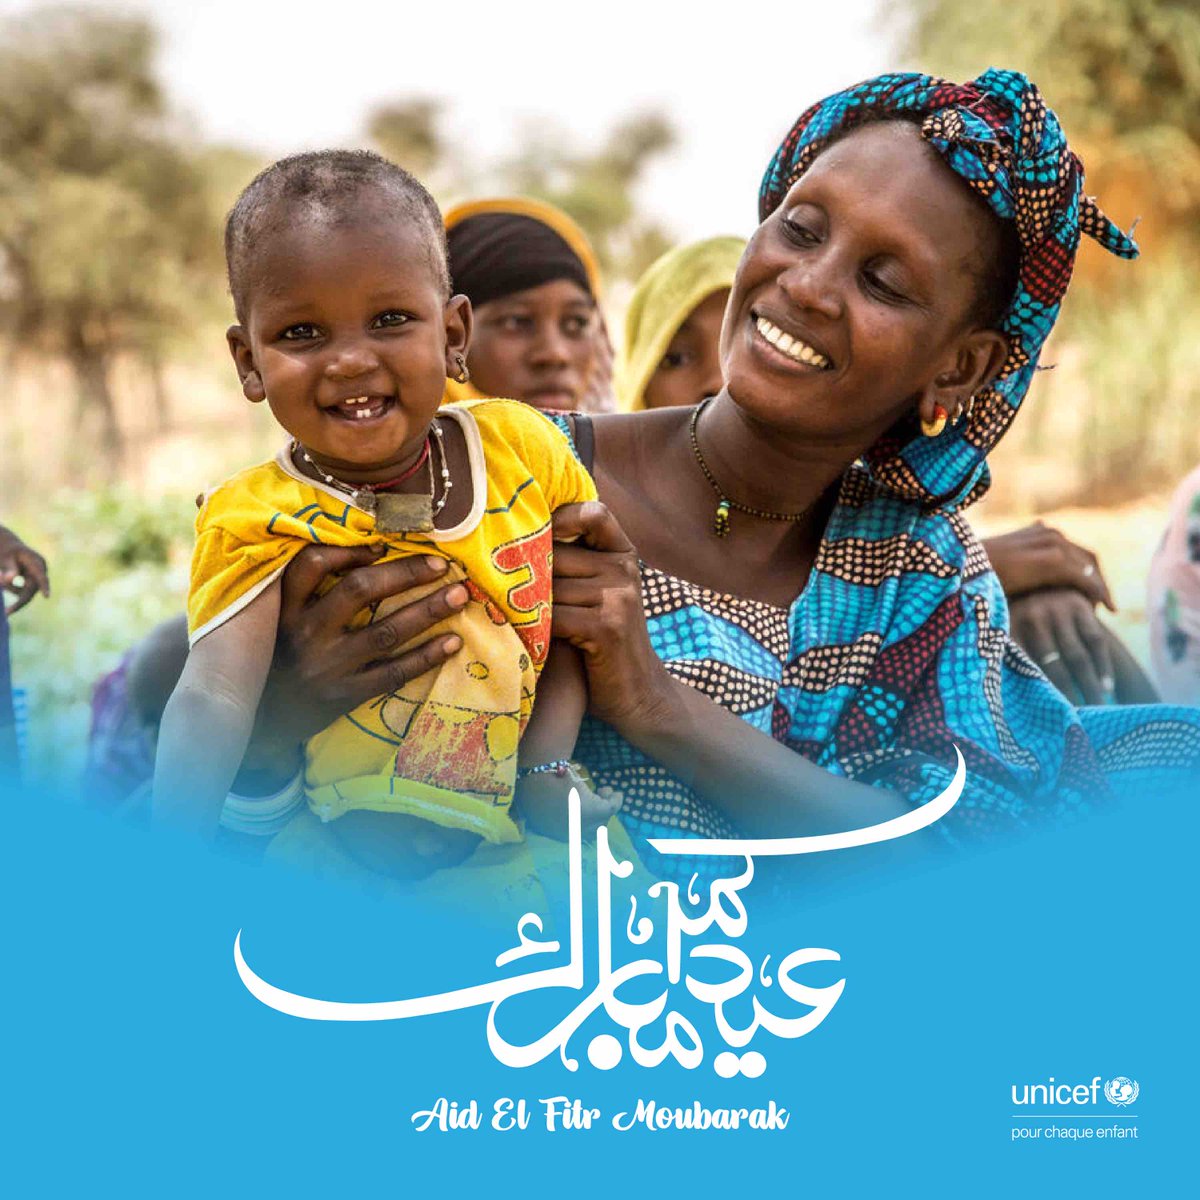 إنه العيد! 🥳 يتمنى فريق اليونيسف في موريتانيا لكم جميعًا عيد فطرٍ سعيد. عيد مبارك. # لكل_طفل، السعادة 💙 C’est l’Eid ! 🥳 L’équipe UNICEF Mauritanie vous souhaite une excellente fête El fitr à tous. Eid Moubarak. #PourChaqueEnfant, la joie 💙